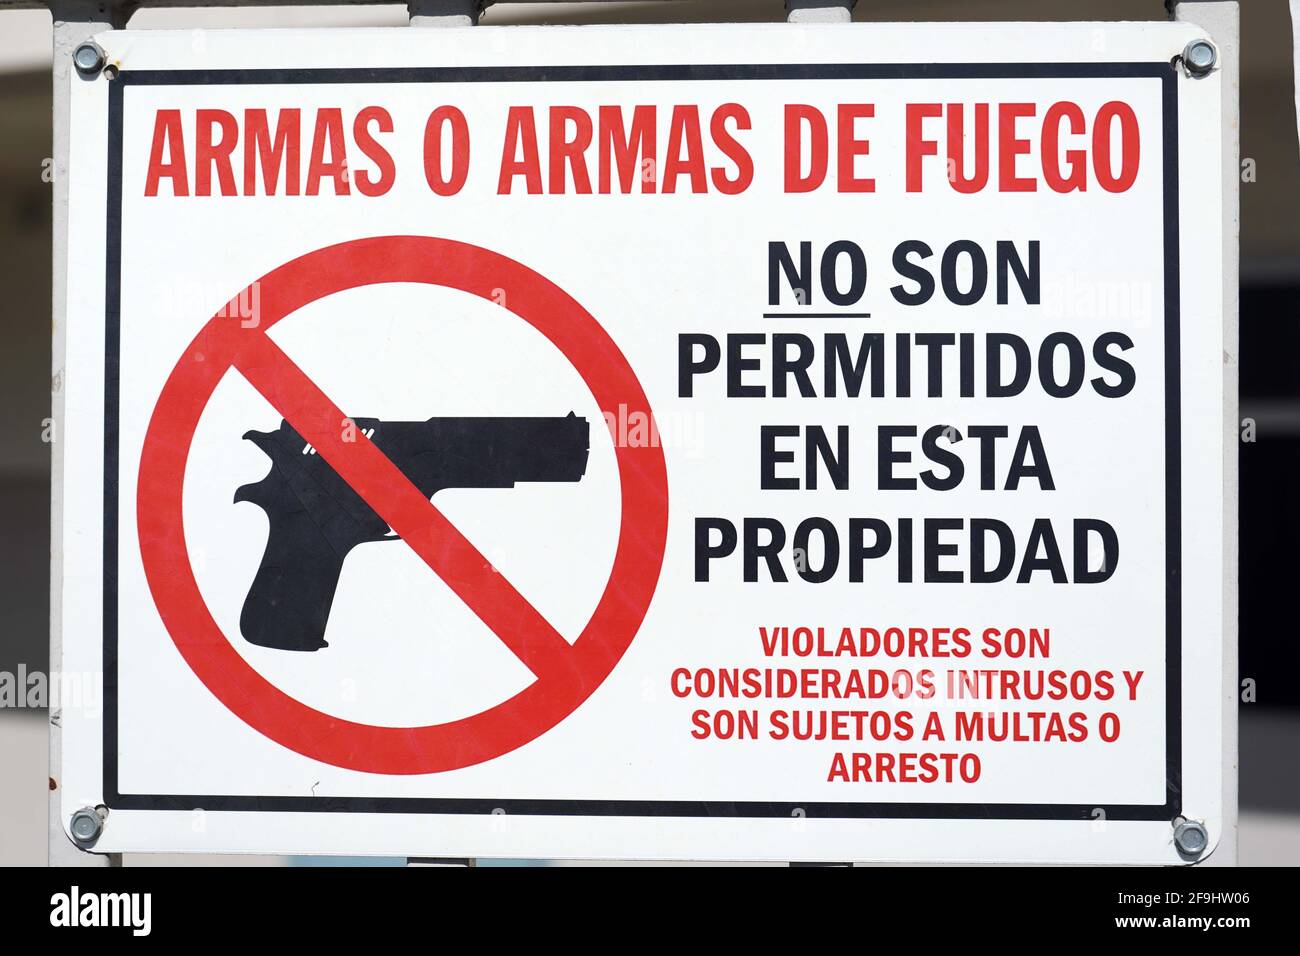 Aucune arme à feu ou arme n'est autorisée sur l'enseigne de propriété en espagnol à l'école élémentaire Brightwood, le dimanche 19 avril 2021, à Monterey Park, Calif. Banque D'Images